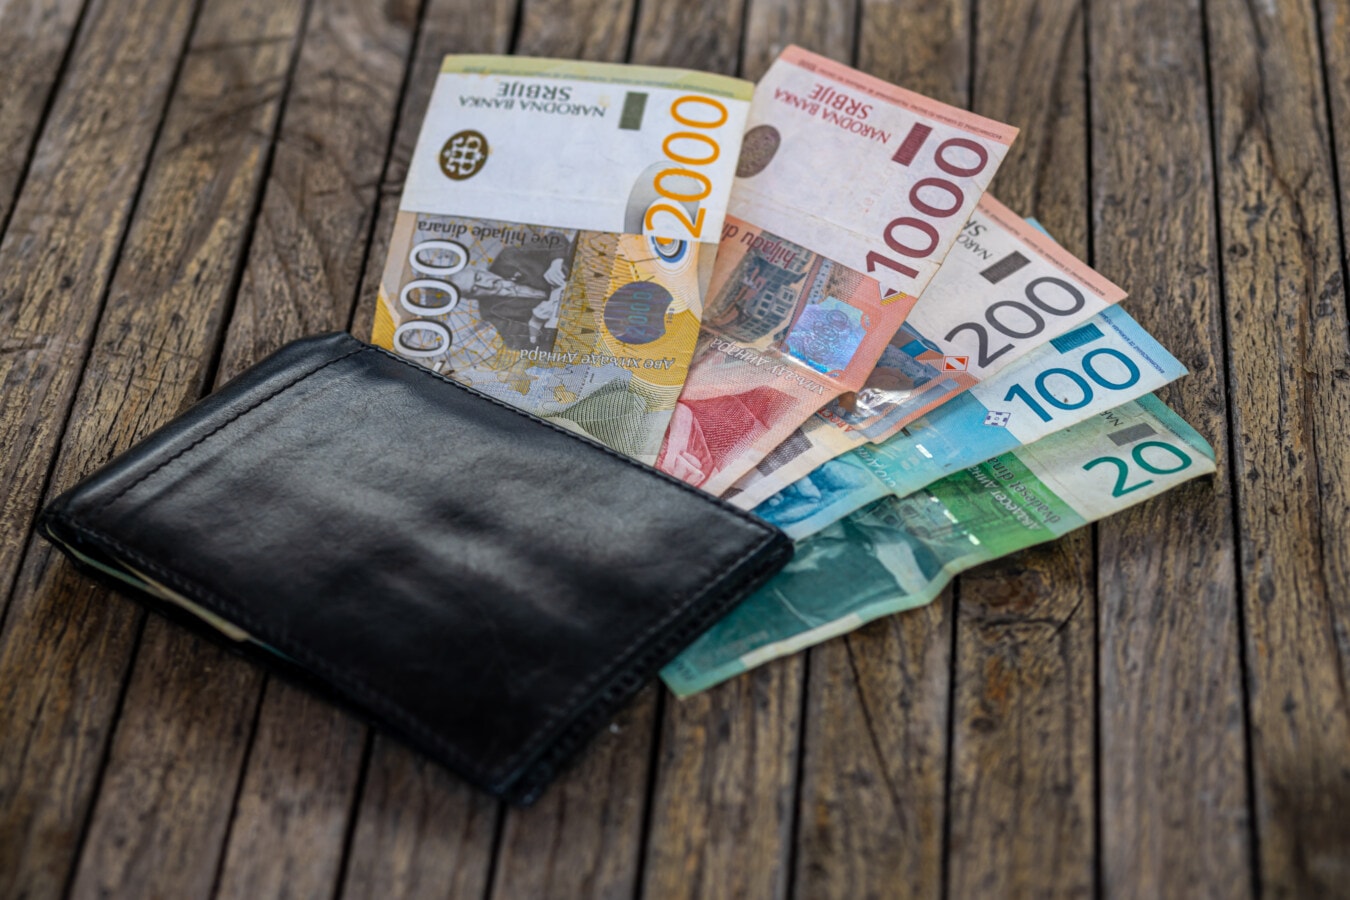 Serbia, dinaro serbo, portafoglio, soldi di carta, banconota, inflazione, crescita economica, soldi, business, valuta